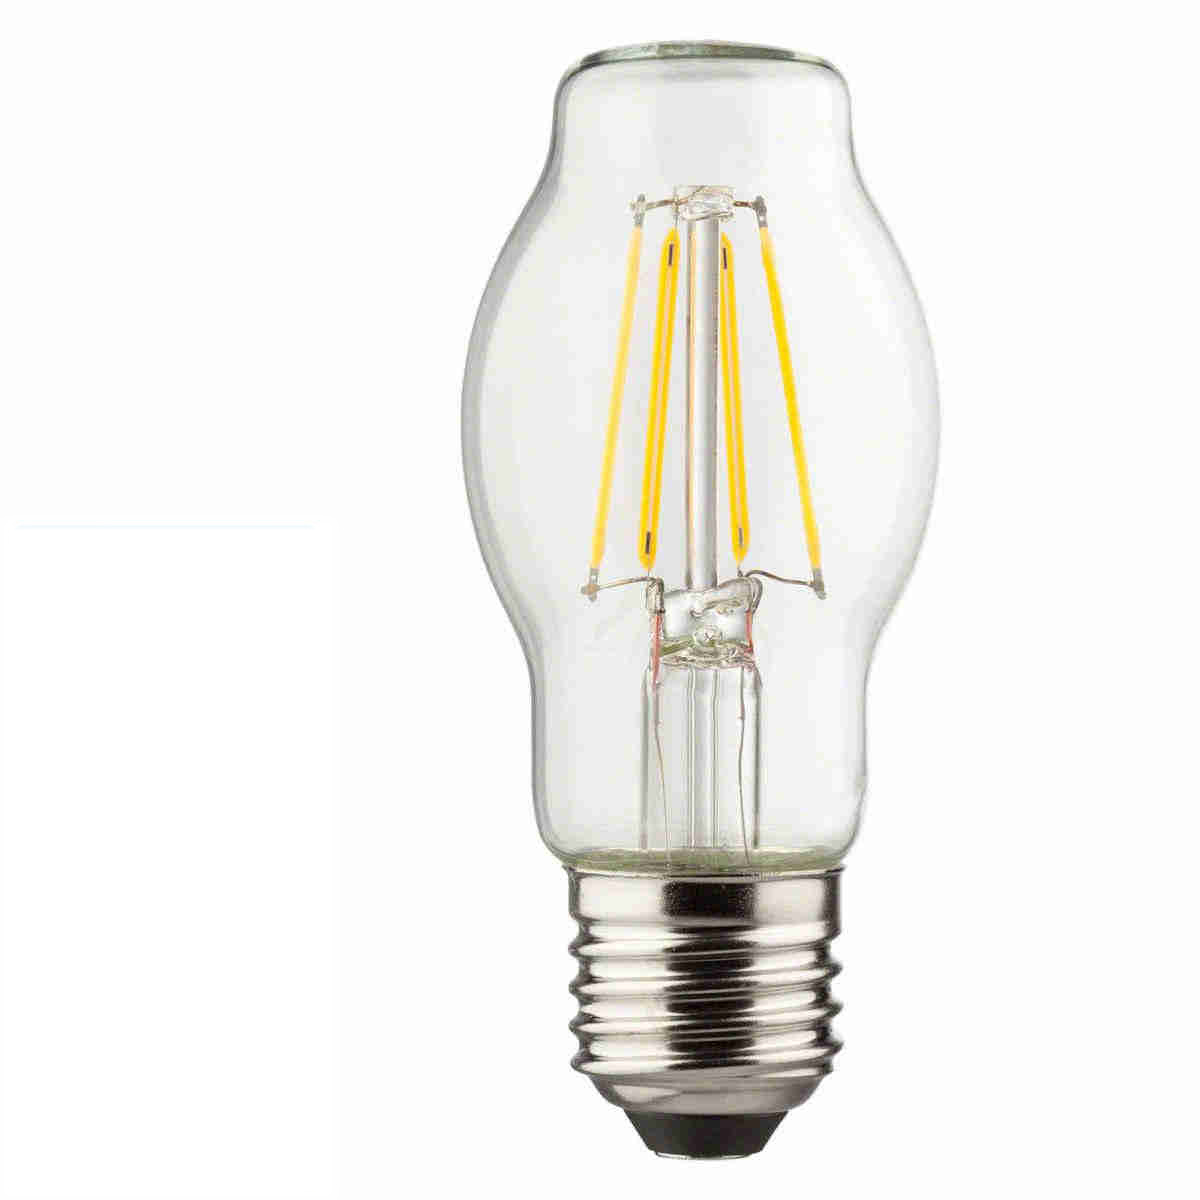 LED Filamentlampe klar Retro BTT Bauform 7 Watt E27 2700 Kelvin - Müller Licht